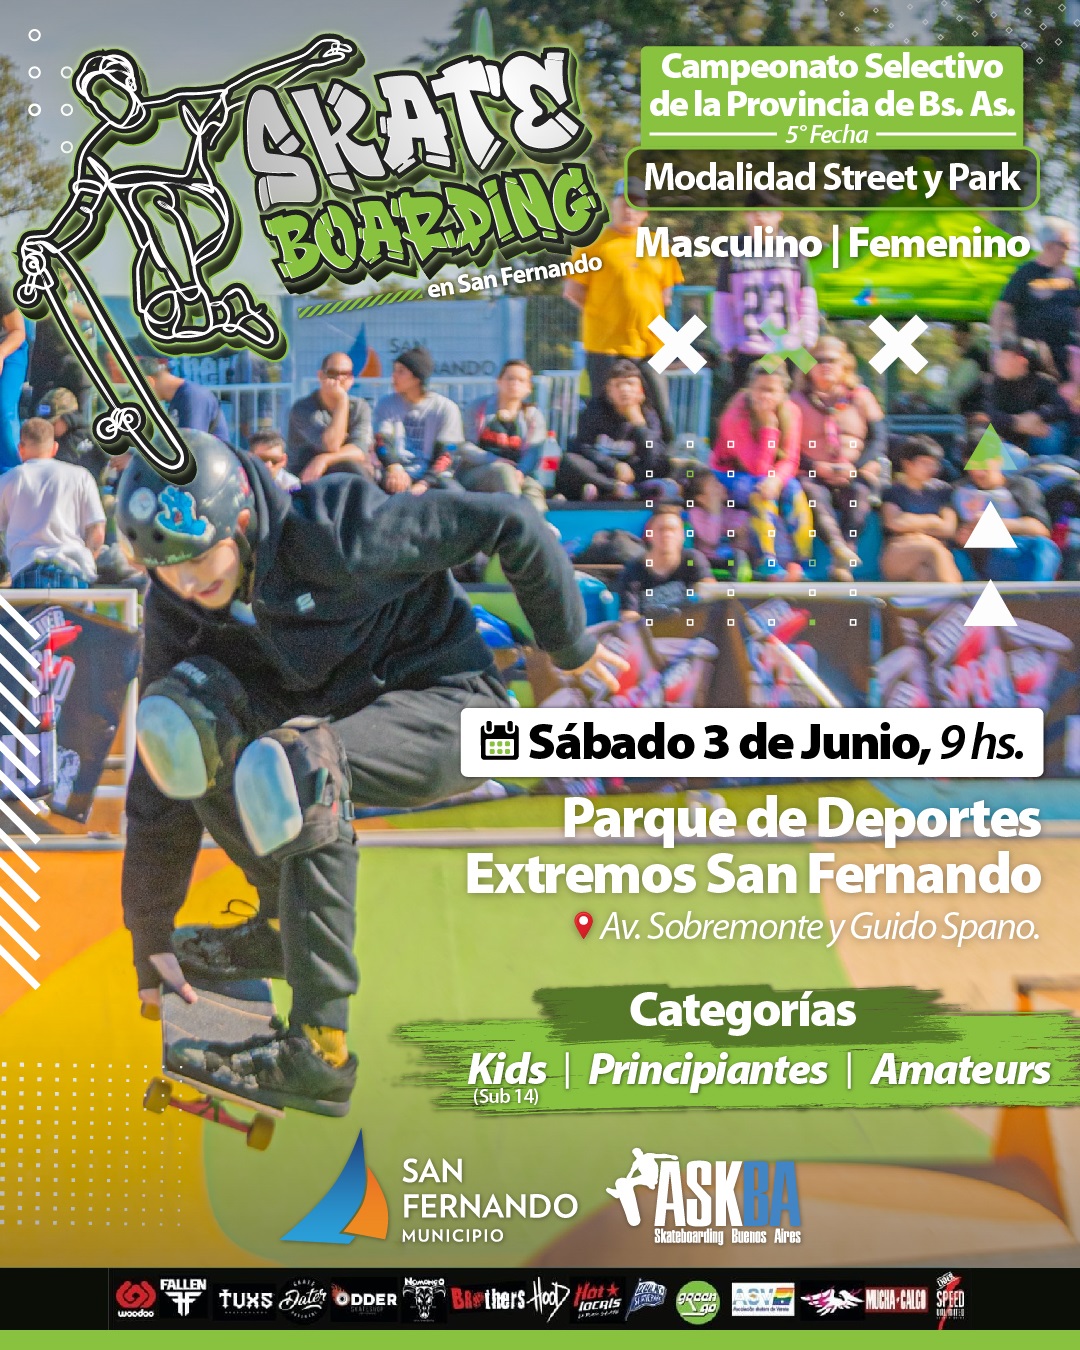 Vuelve el Campeonato de Skateboarding a San Fernando